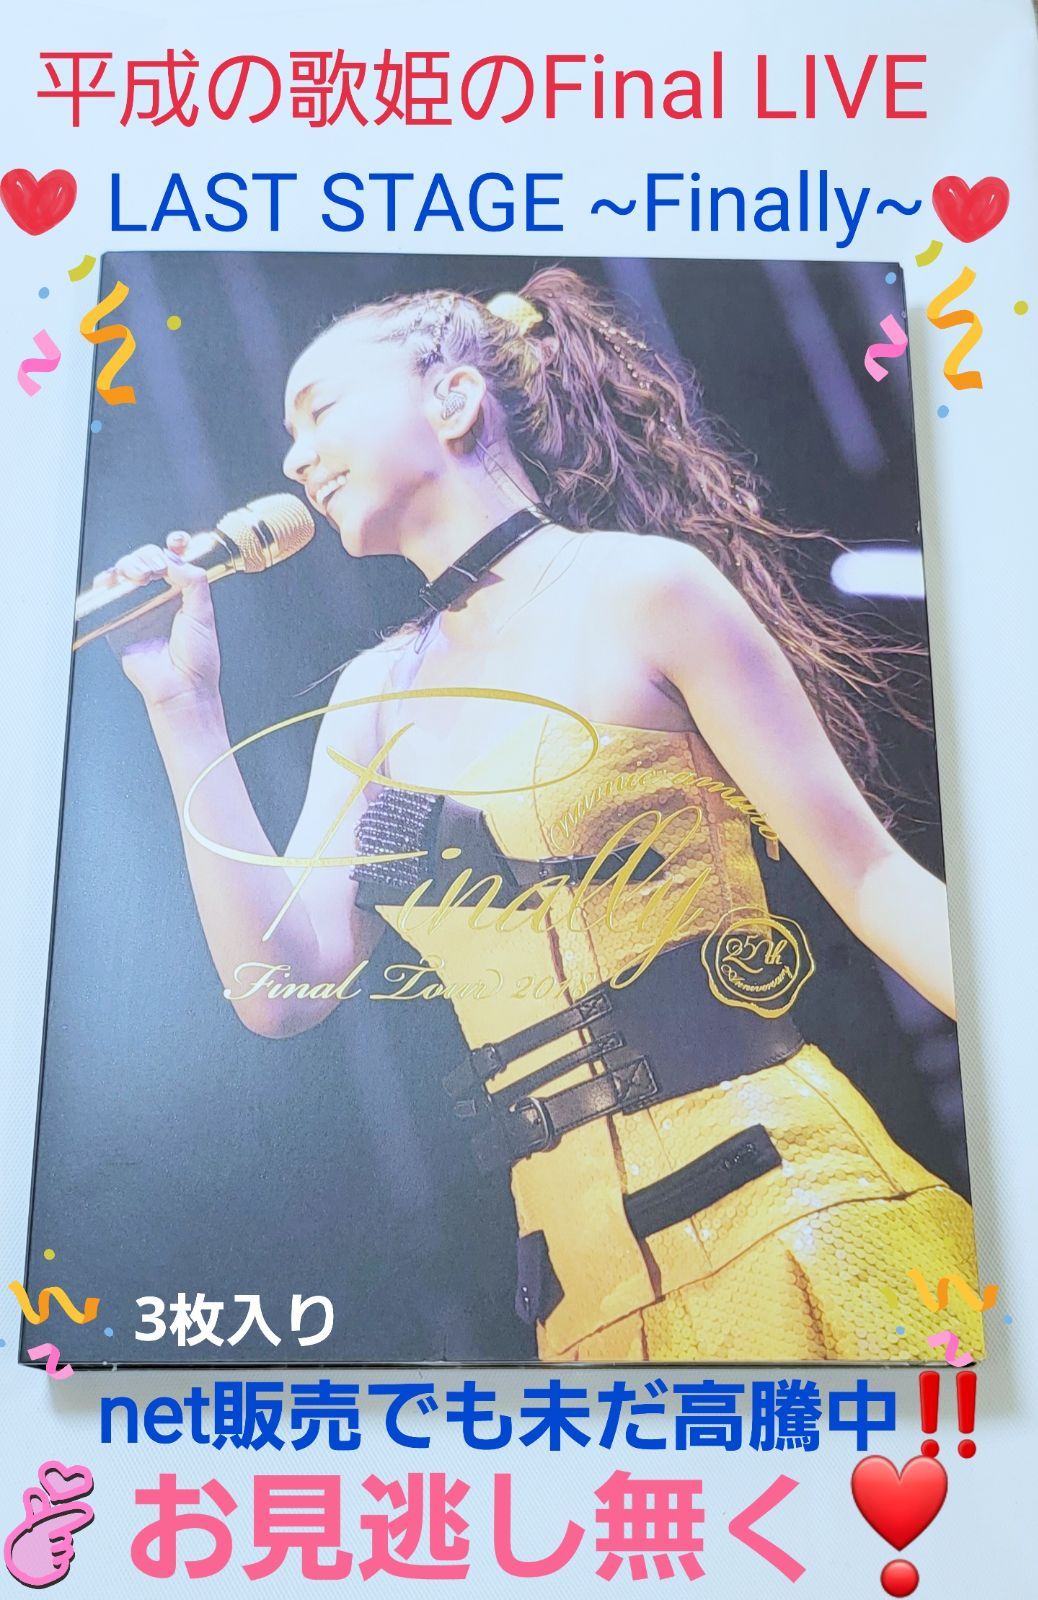 安室奈美恵 Final Tour 〜Finally〜 札幌公演 Blu-ray www